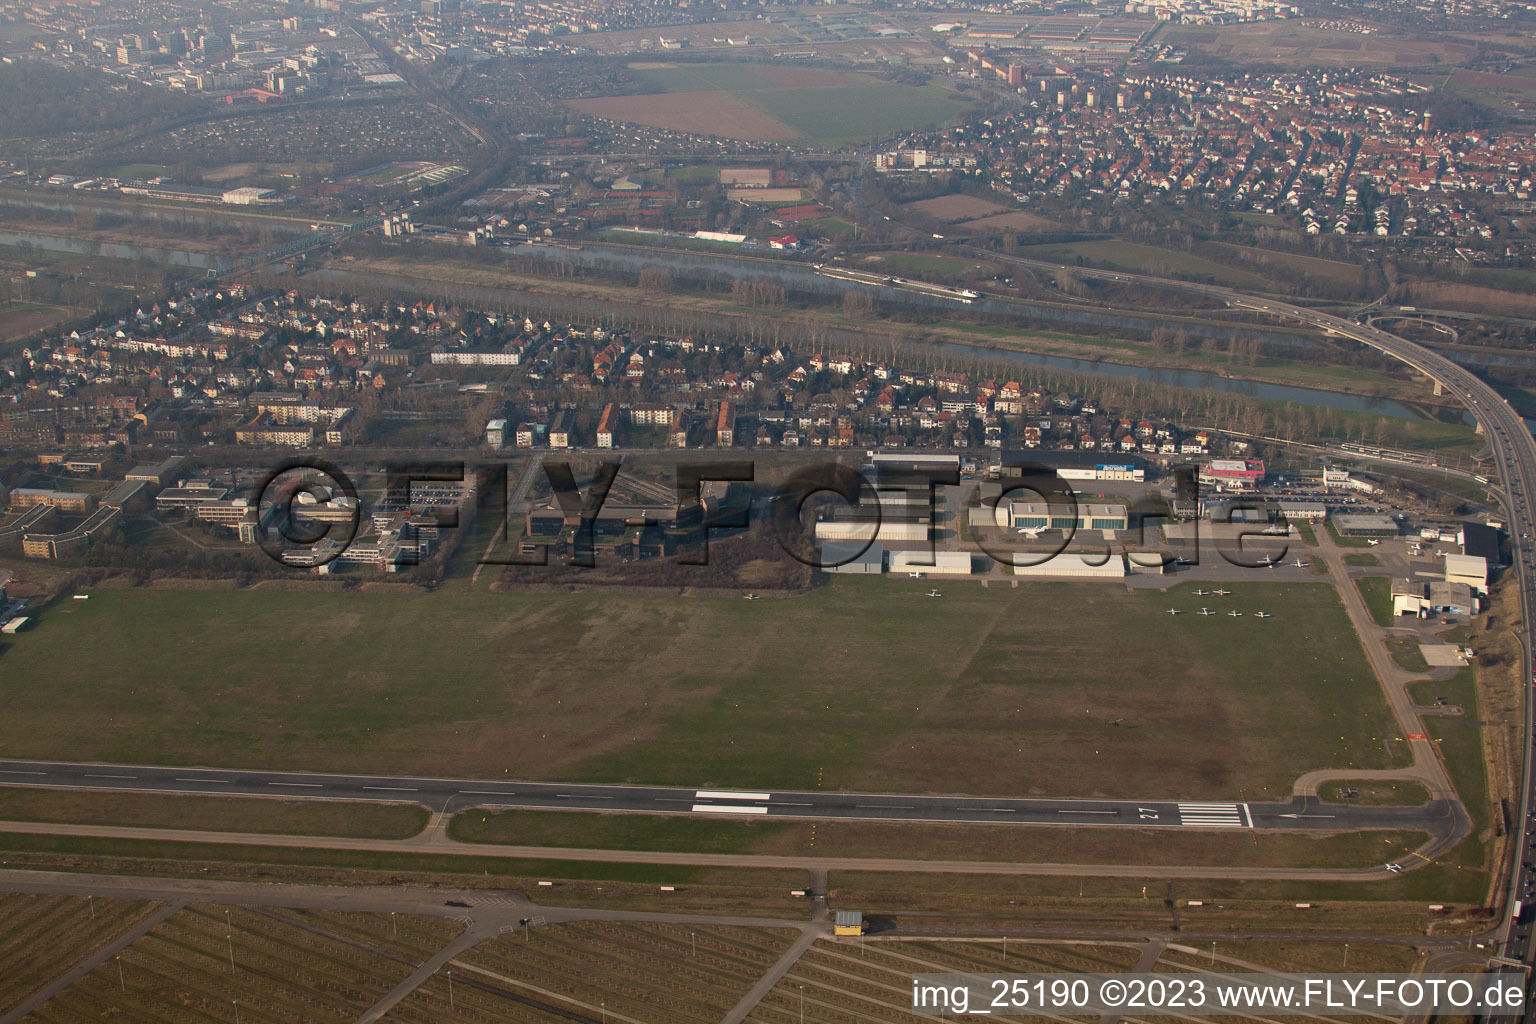 Photographie aérienne de Aéroport de la ville à le quartier Neuostheim in Mannheim dans le département Bade-Wurtemberg, Allemagne